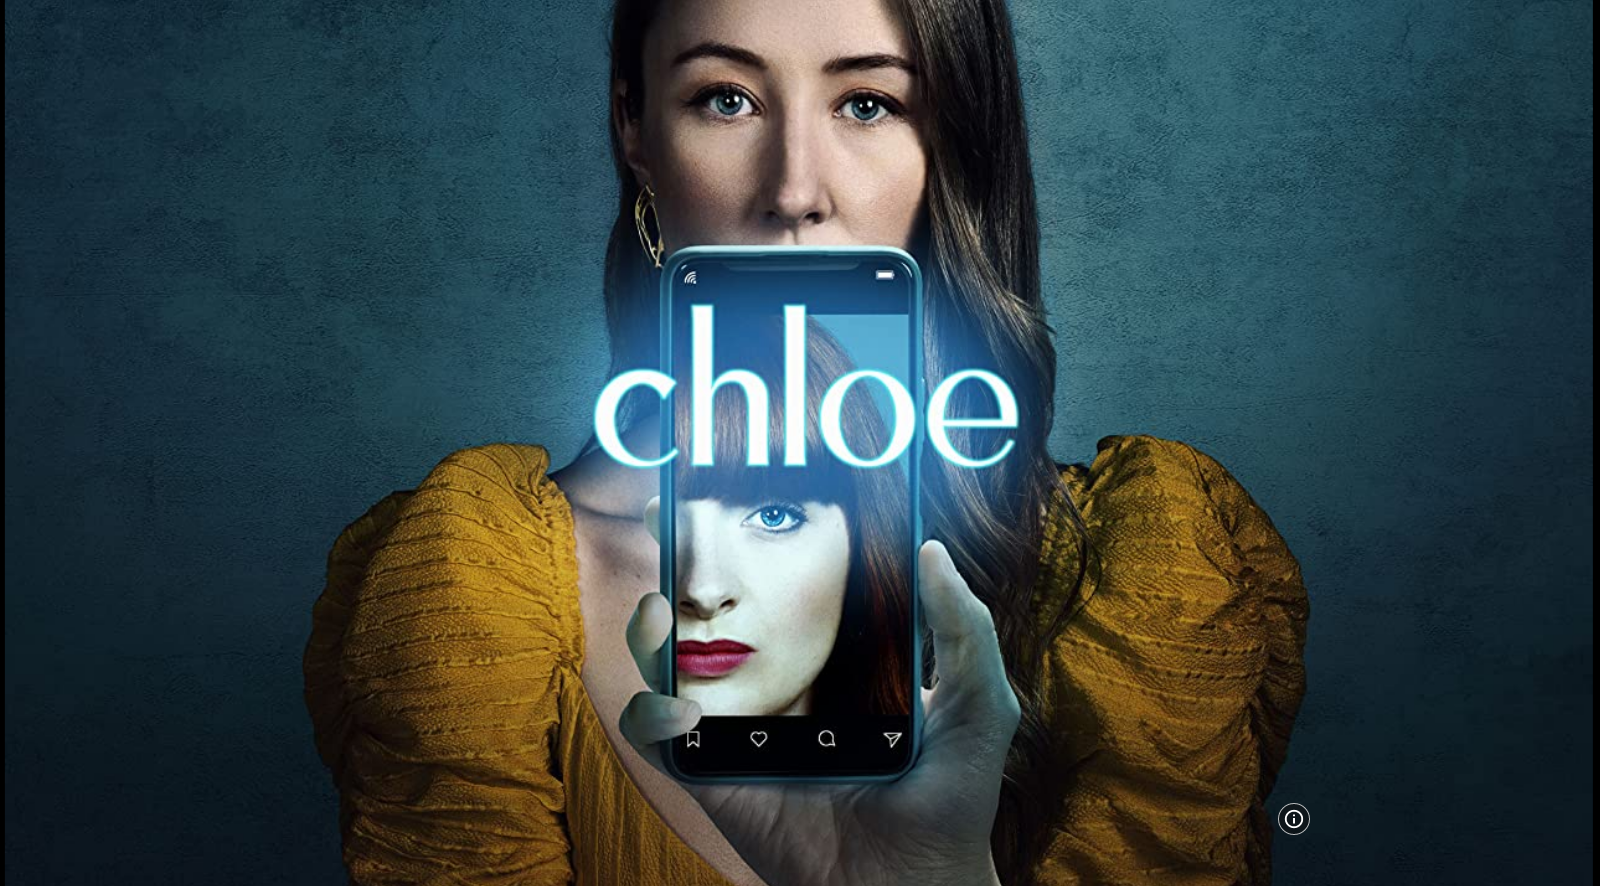 Chloe S01E02 HLG 2160p WEB H265